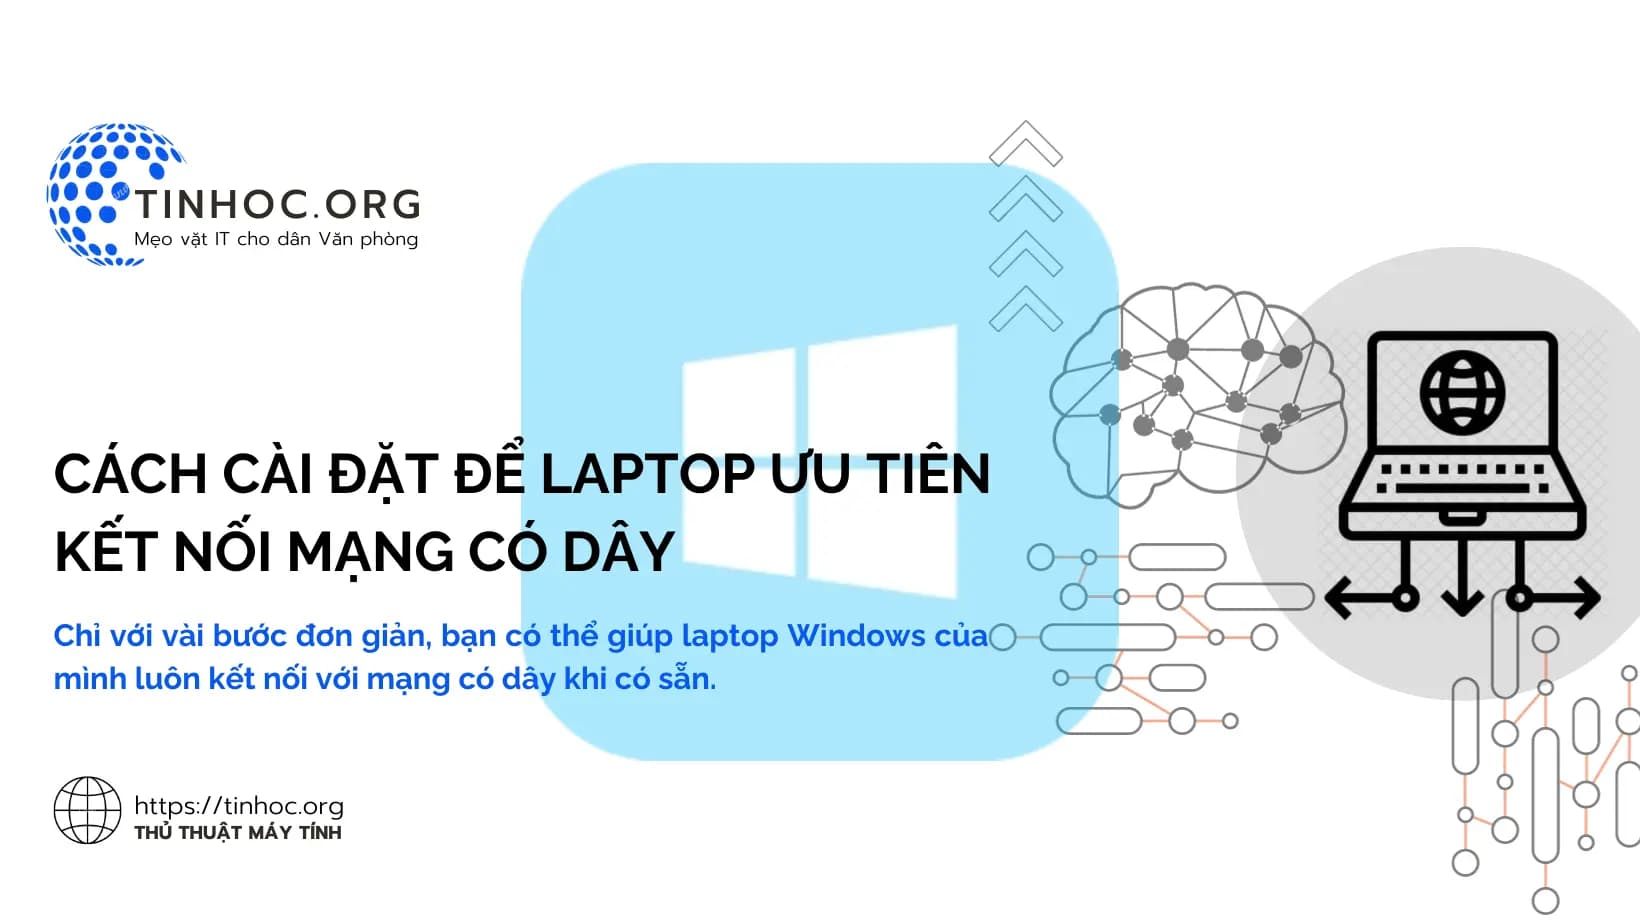 Chỉ với vài bước đơn giản, bạn có thể giúp laptop Windows của mình luôn kết nối với mạng có dây khi có sẵn.